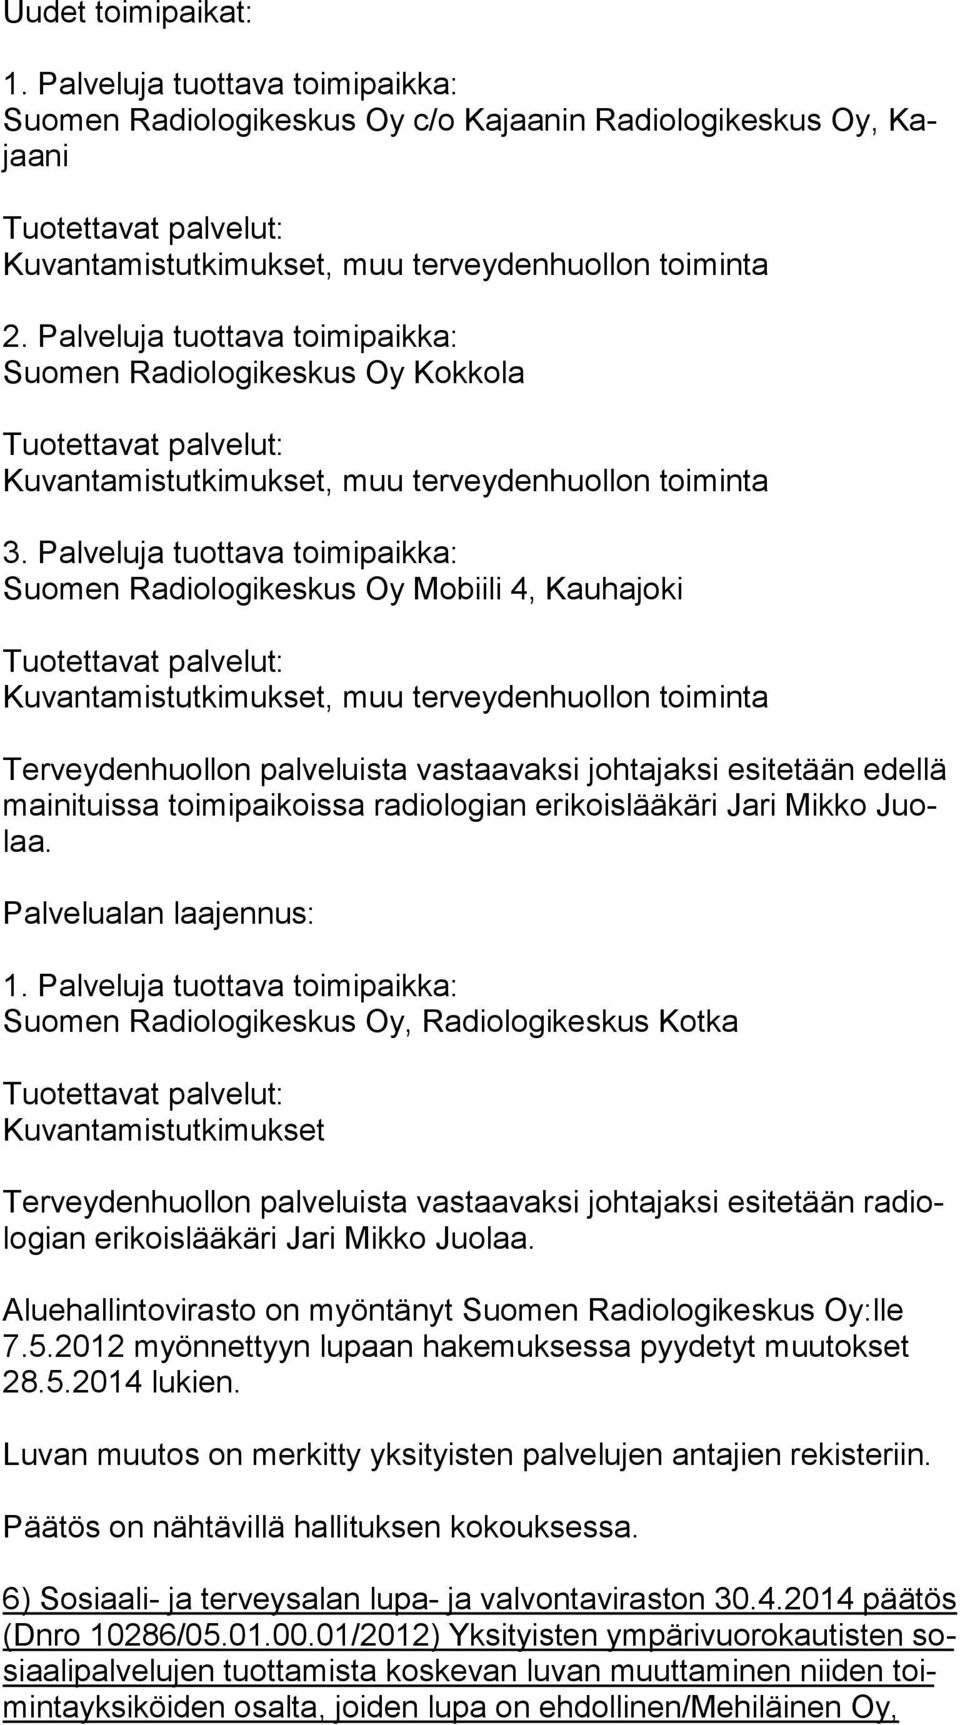 Palveluja tuottava toimipaikka: Suomen Radiologikeskus Oy Mobiili 4, Kauhajoki Kuvantamistutkimukset, muu terveydenhuollon toiminta Terveydenhuollon palveluista vastaavaksi johtajaksi esitetään